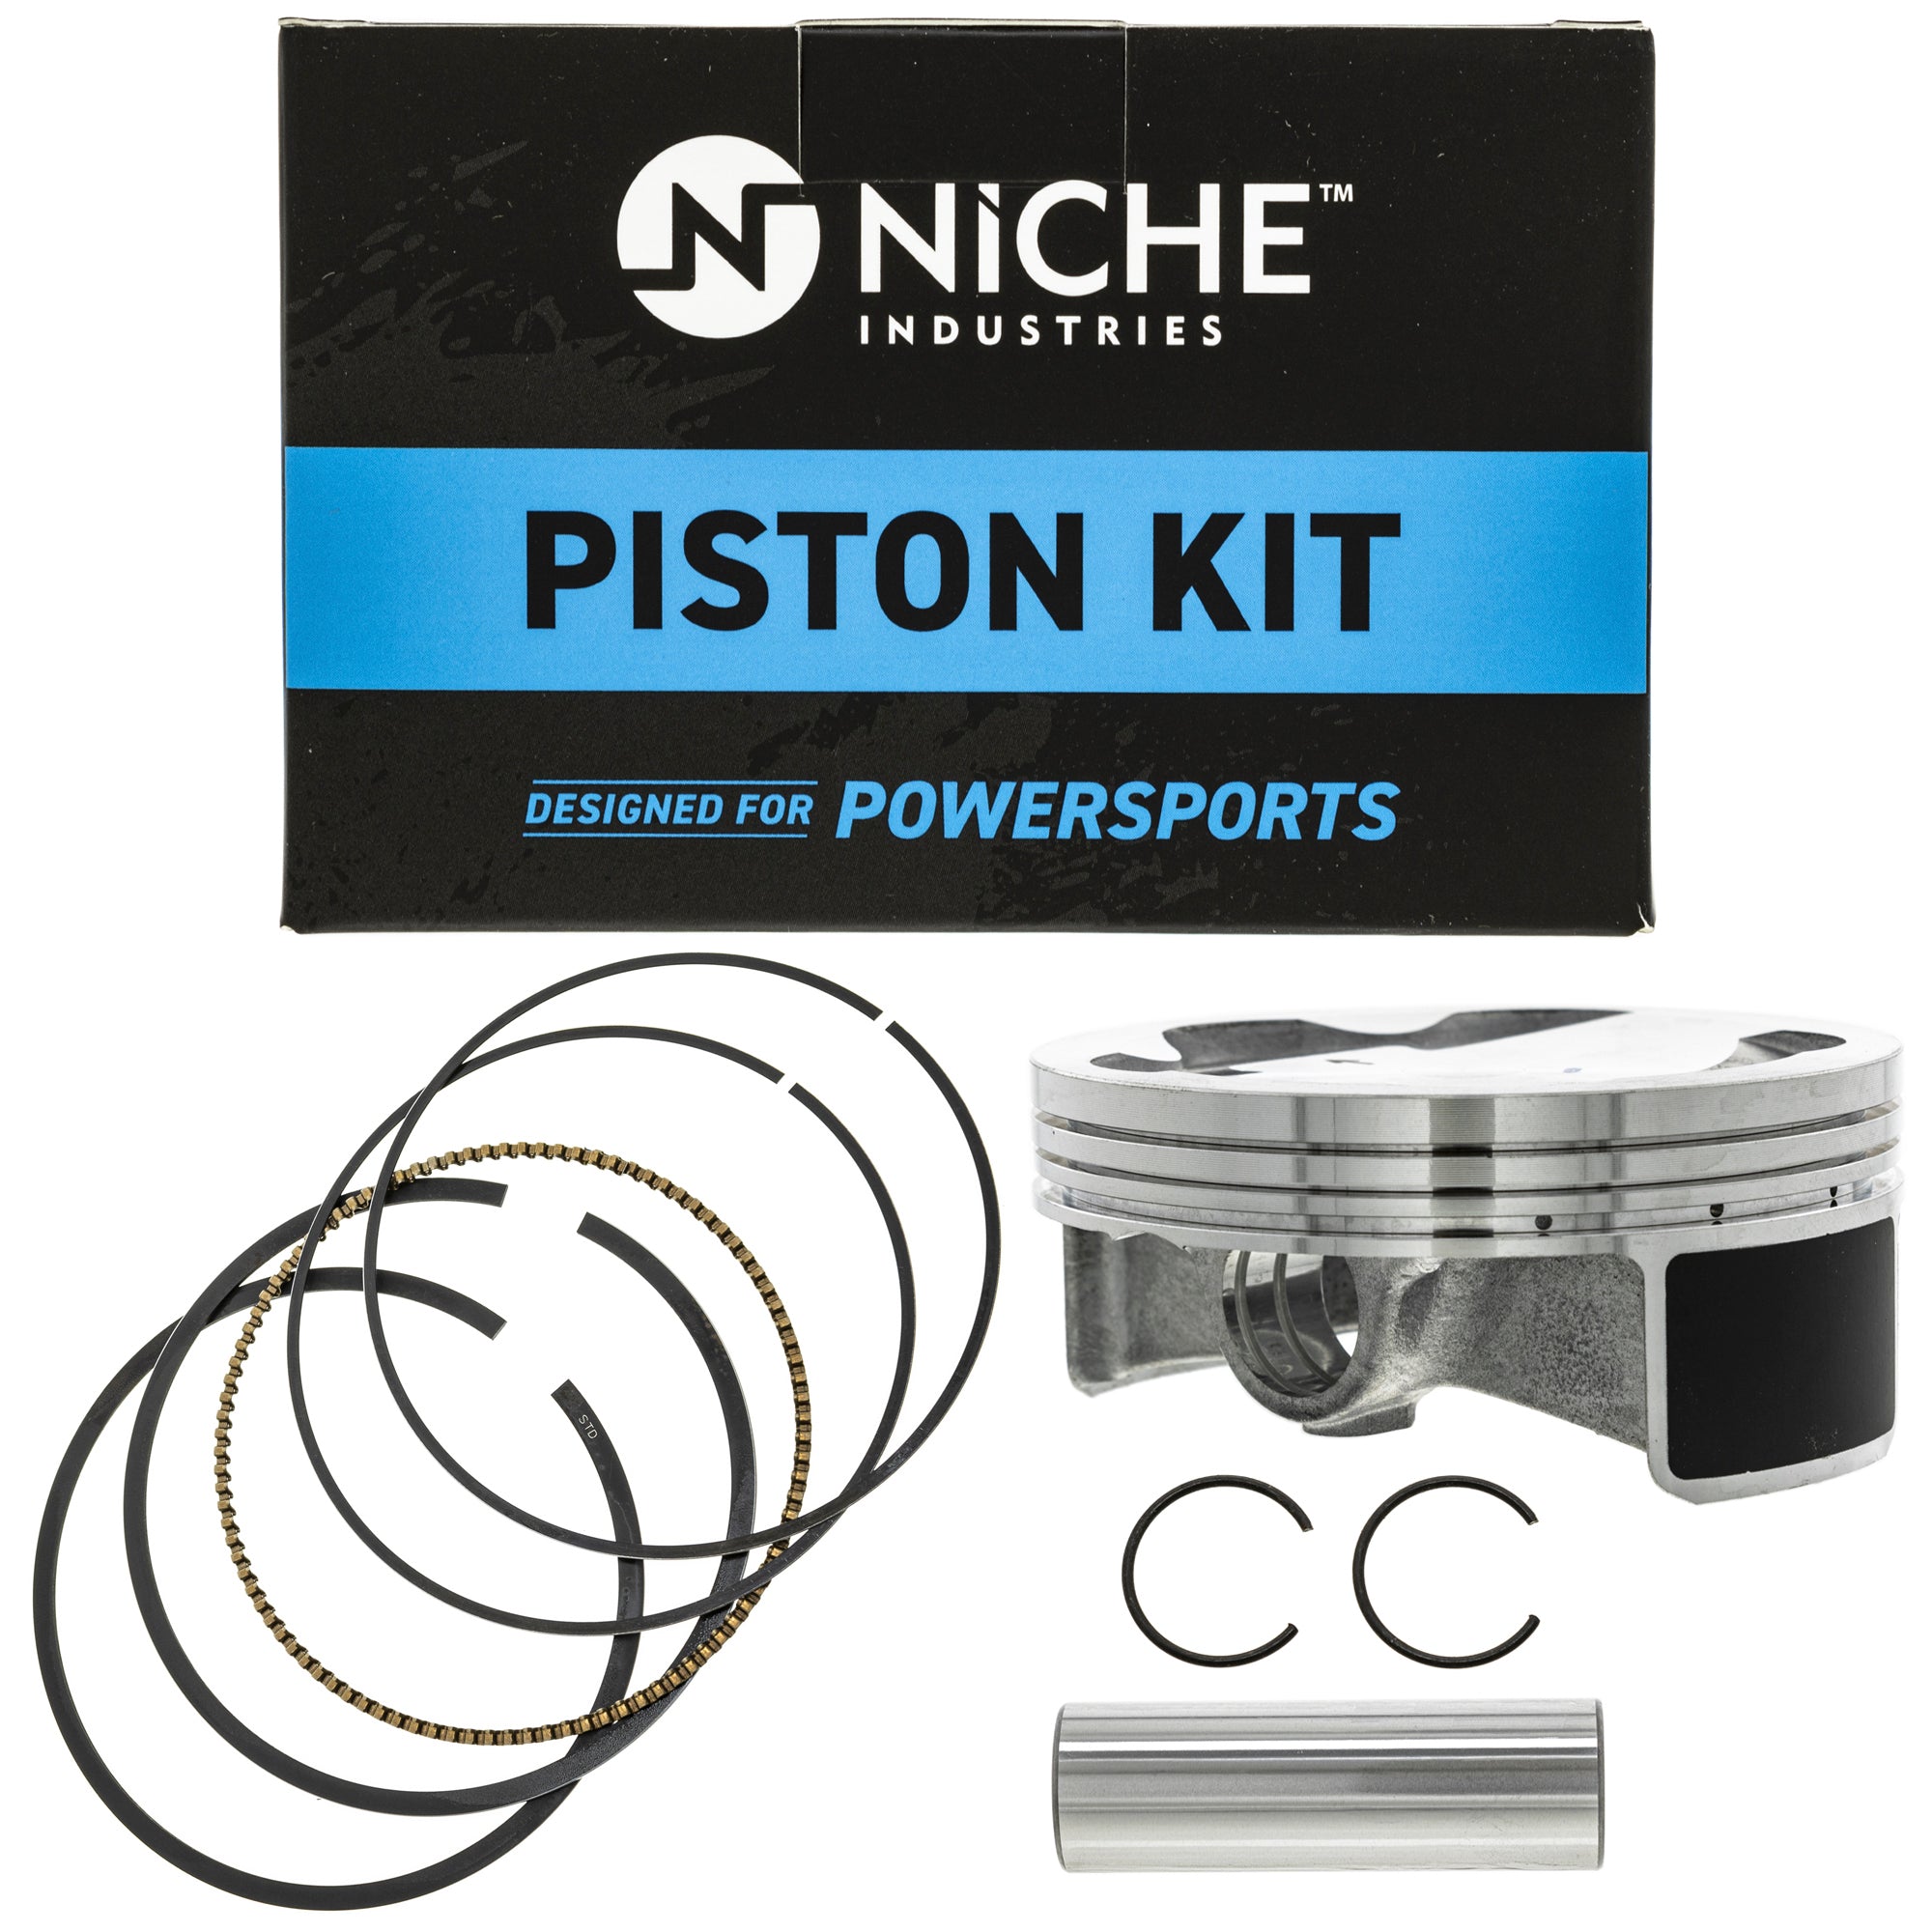 NICHE MK1001151 Piston Kit